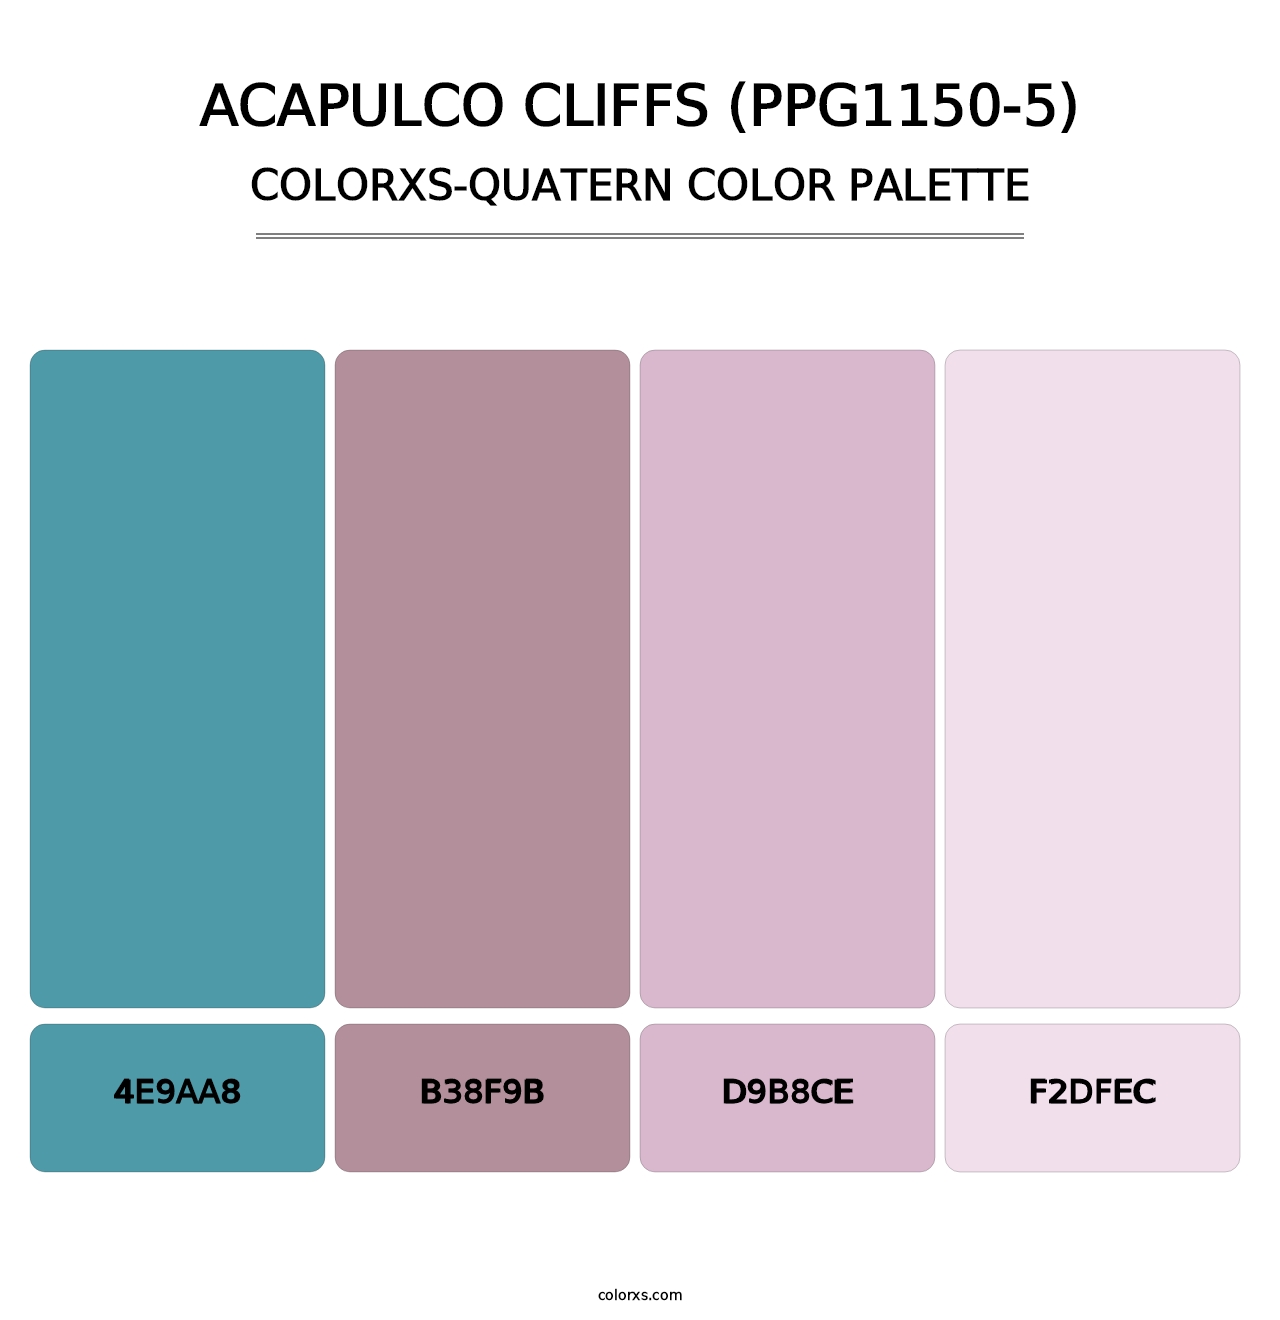 Acapulco Cliffs (PPG1150-5) - Colorxs Quatern Palette